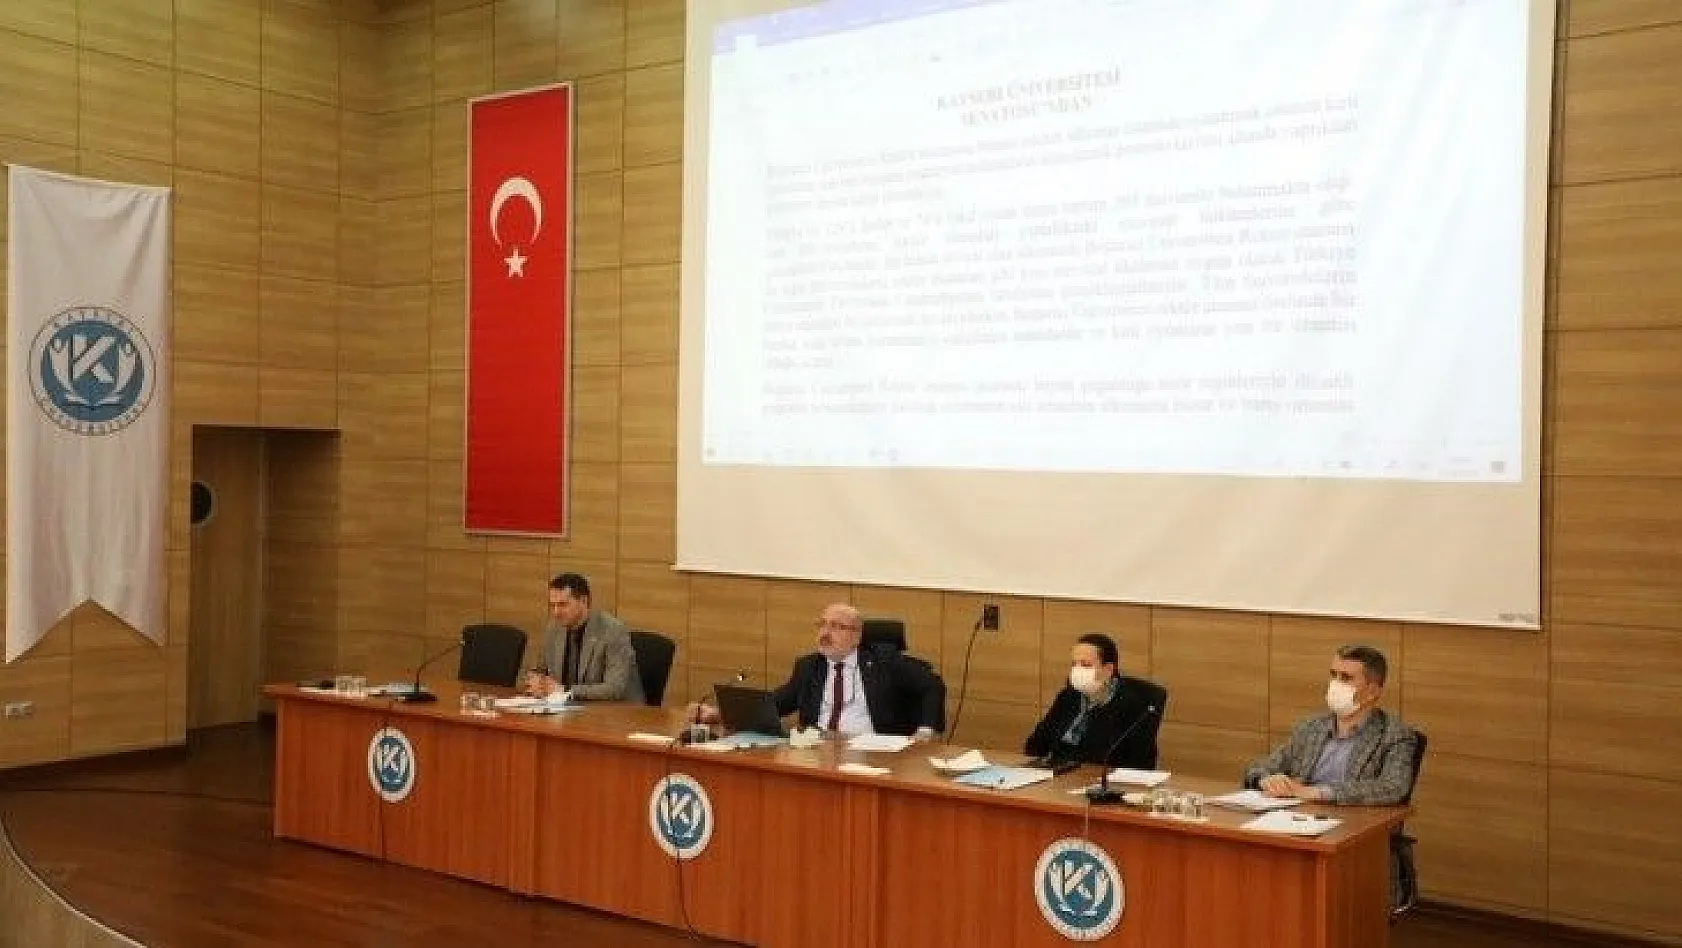 Kayseri Üniversitesi Senatosu: 'Boğaziçi Üniversitesi'ndeki eylemleri ibretle takip ediyoruz'